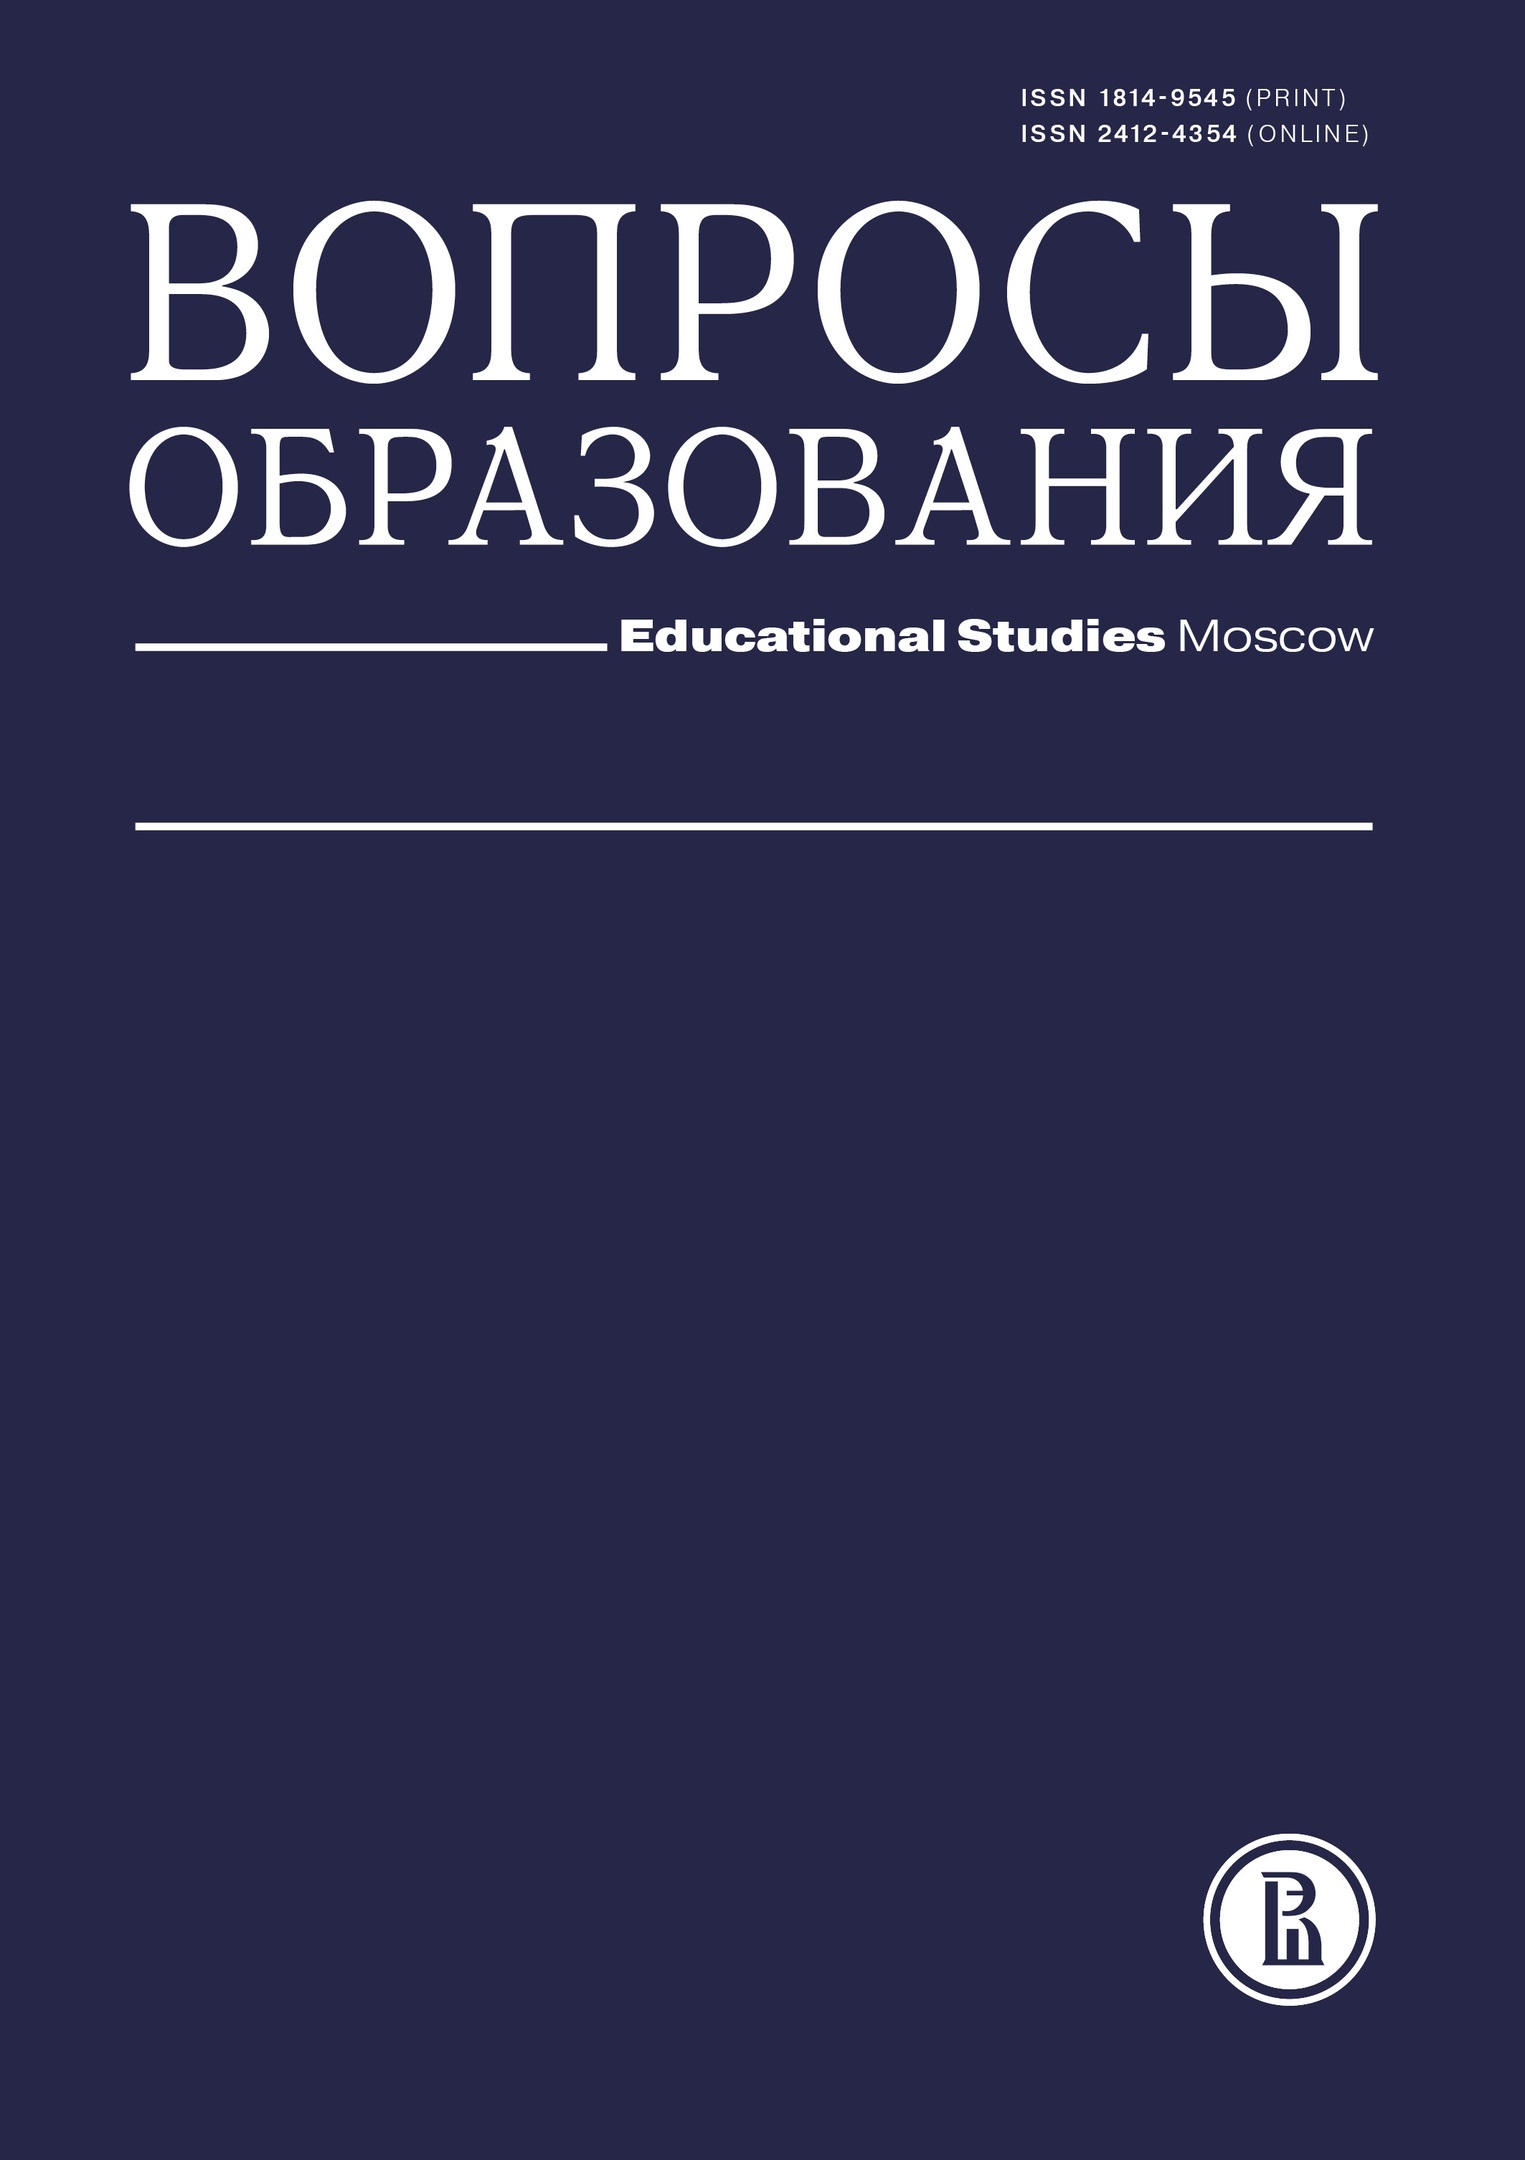 Журнал / Journal "Вопросы образования / Educational Studies Moscow"